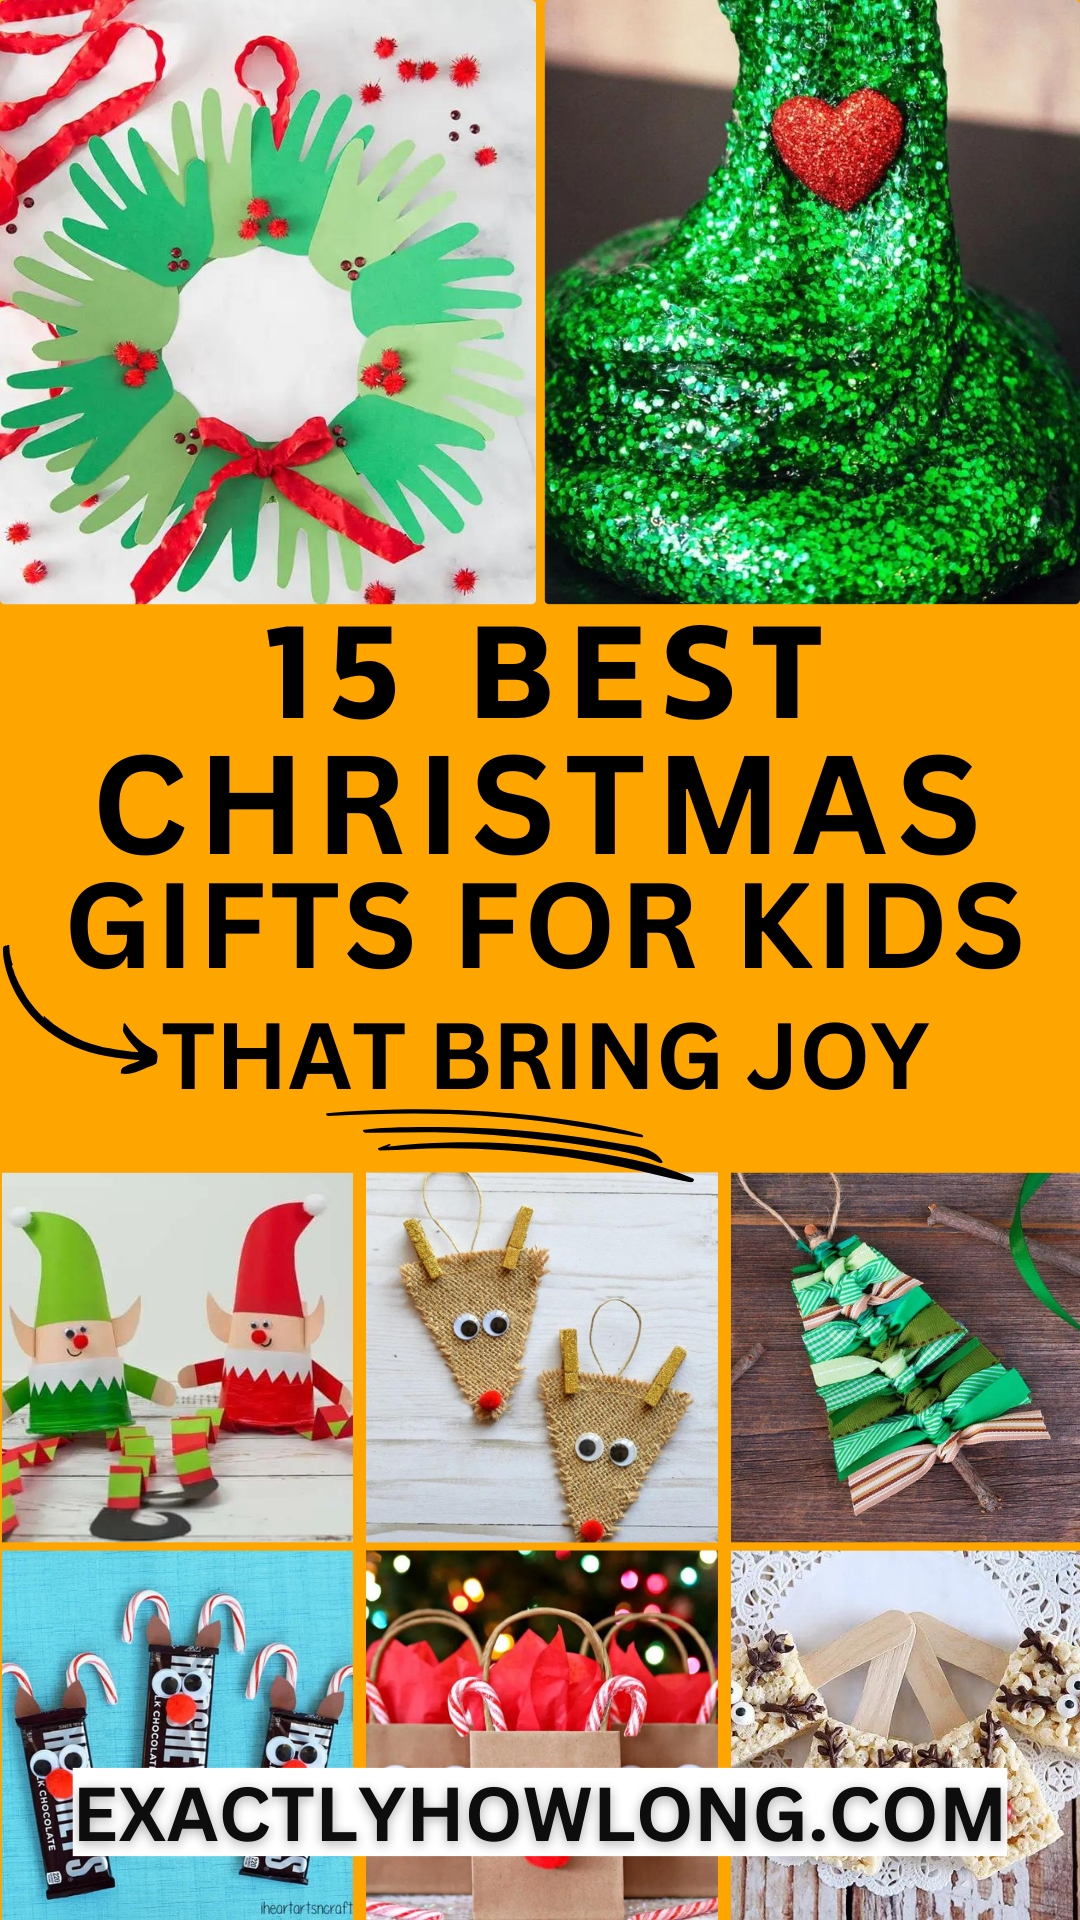 هدايا عيد الميلاد غير مكلفة يمكن صنعها بنفسك للأطفال بميزانية محدودة